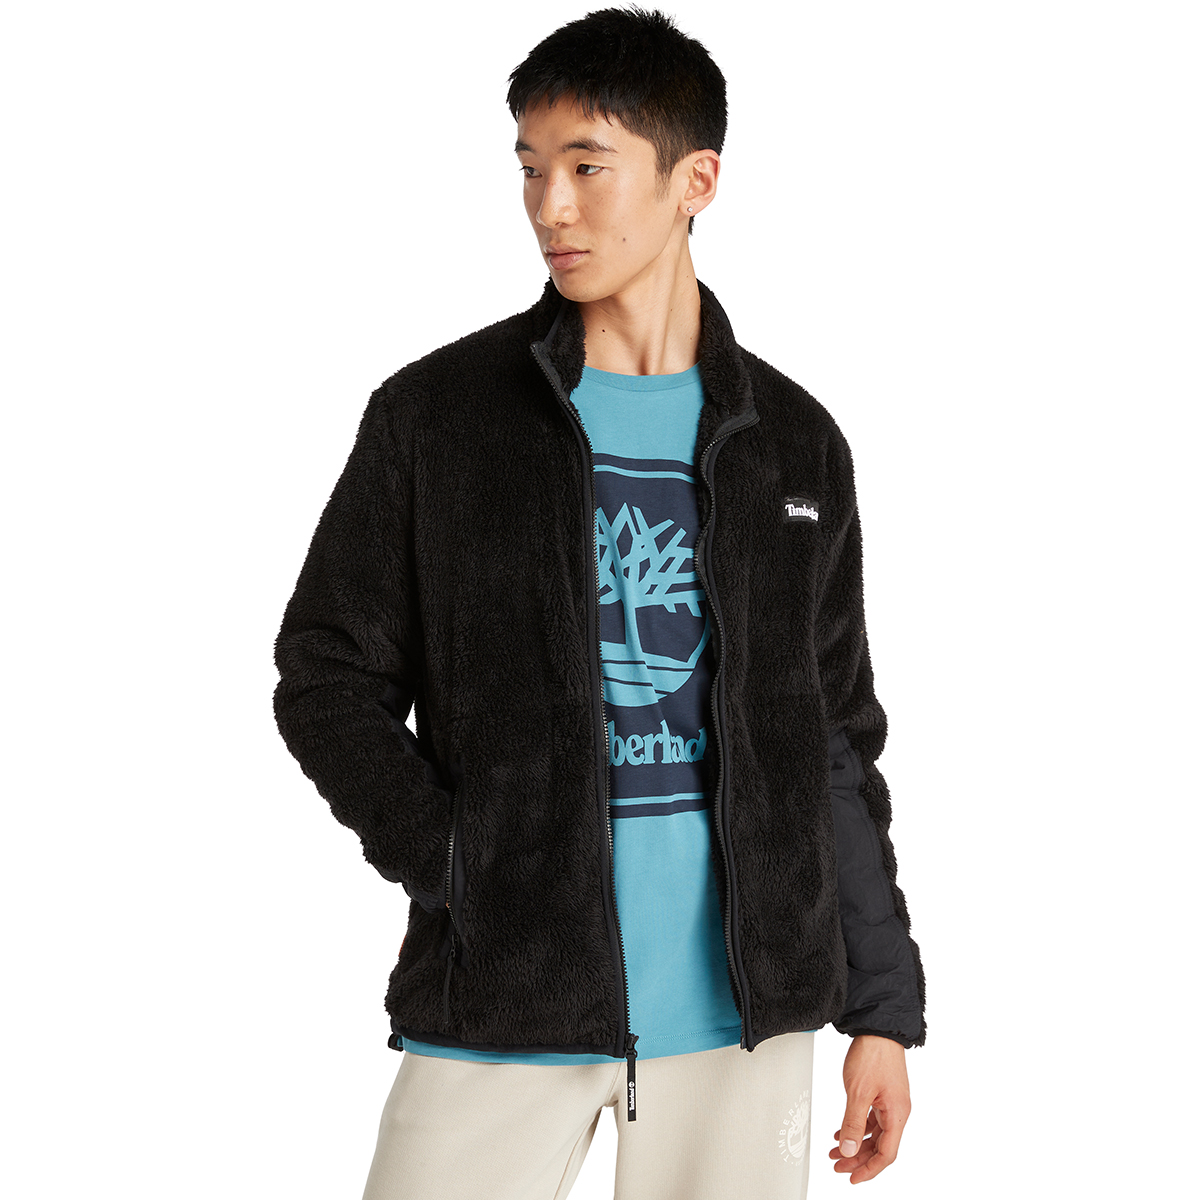 Timberland Men's High-Pile Full-Zip Fleece Jacket